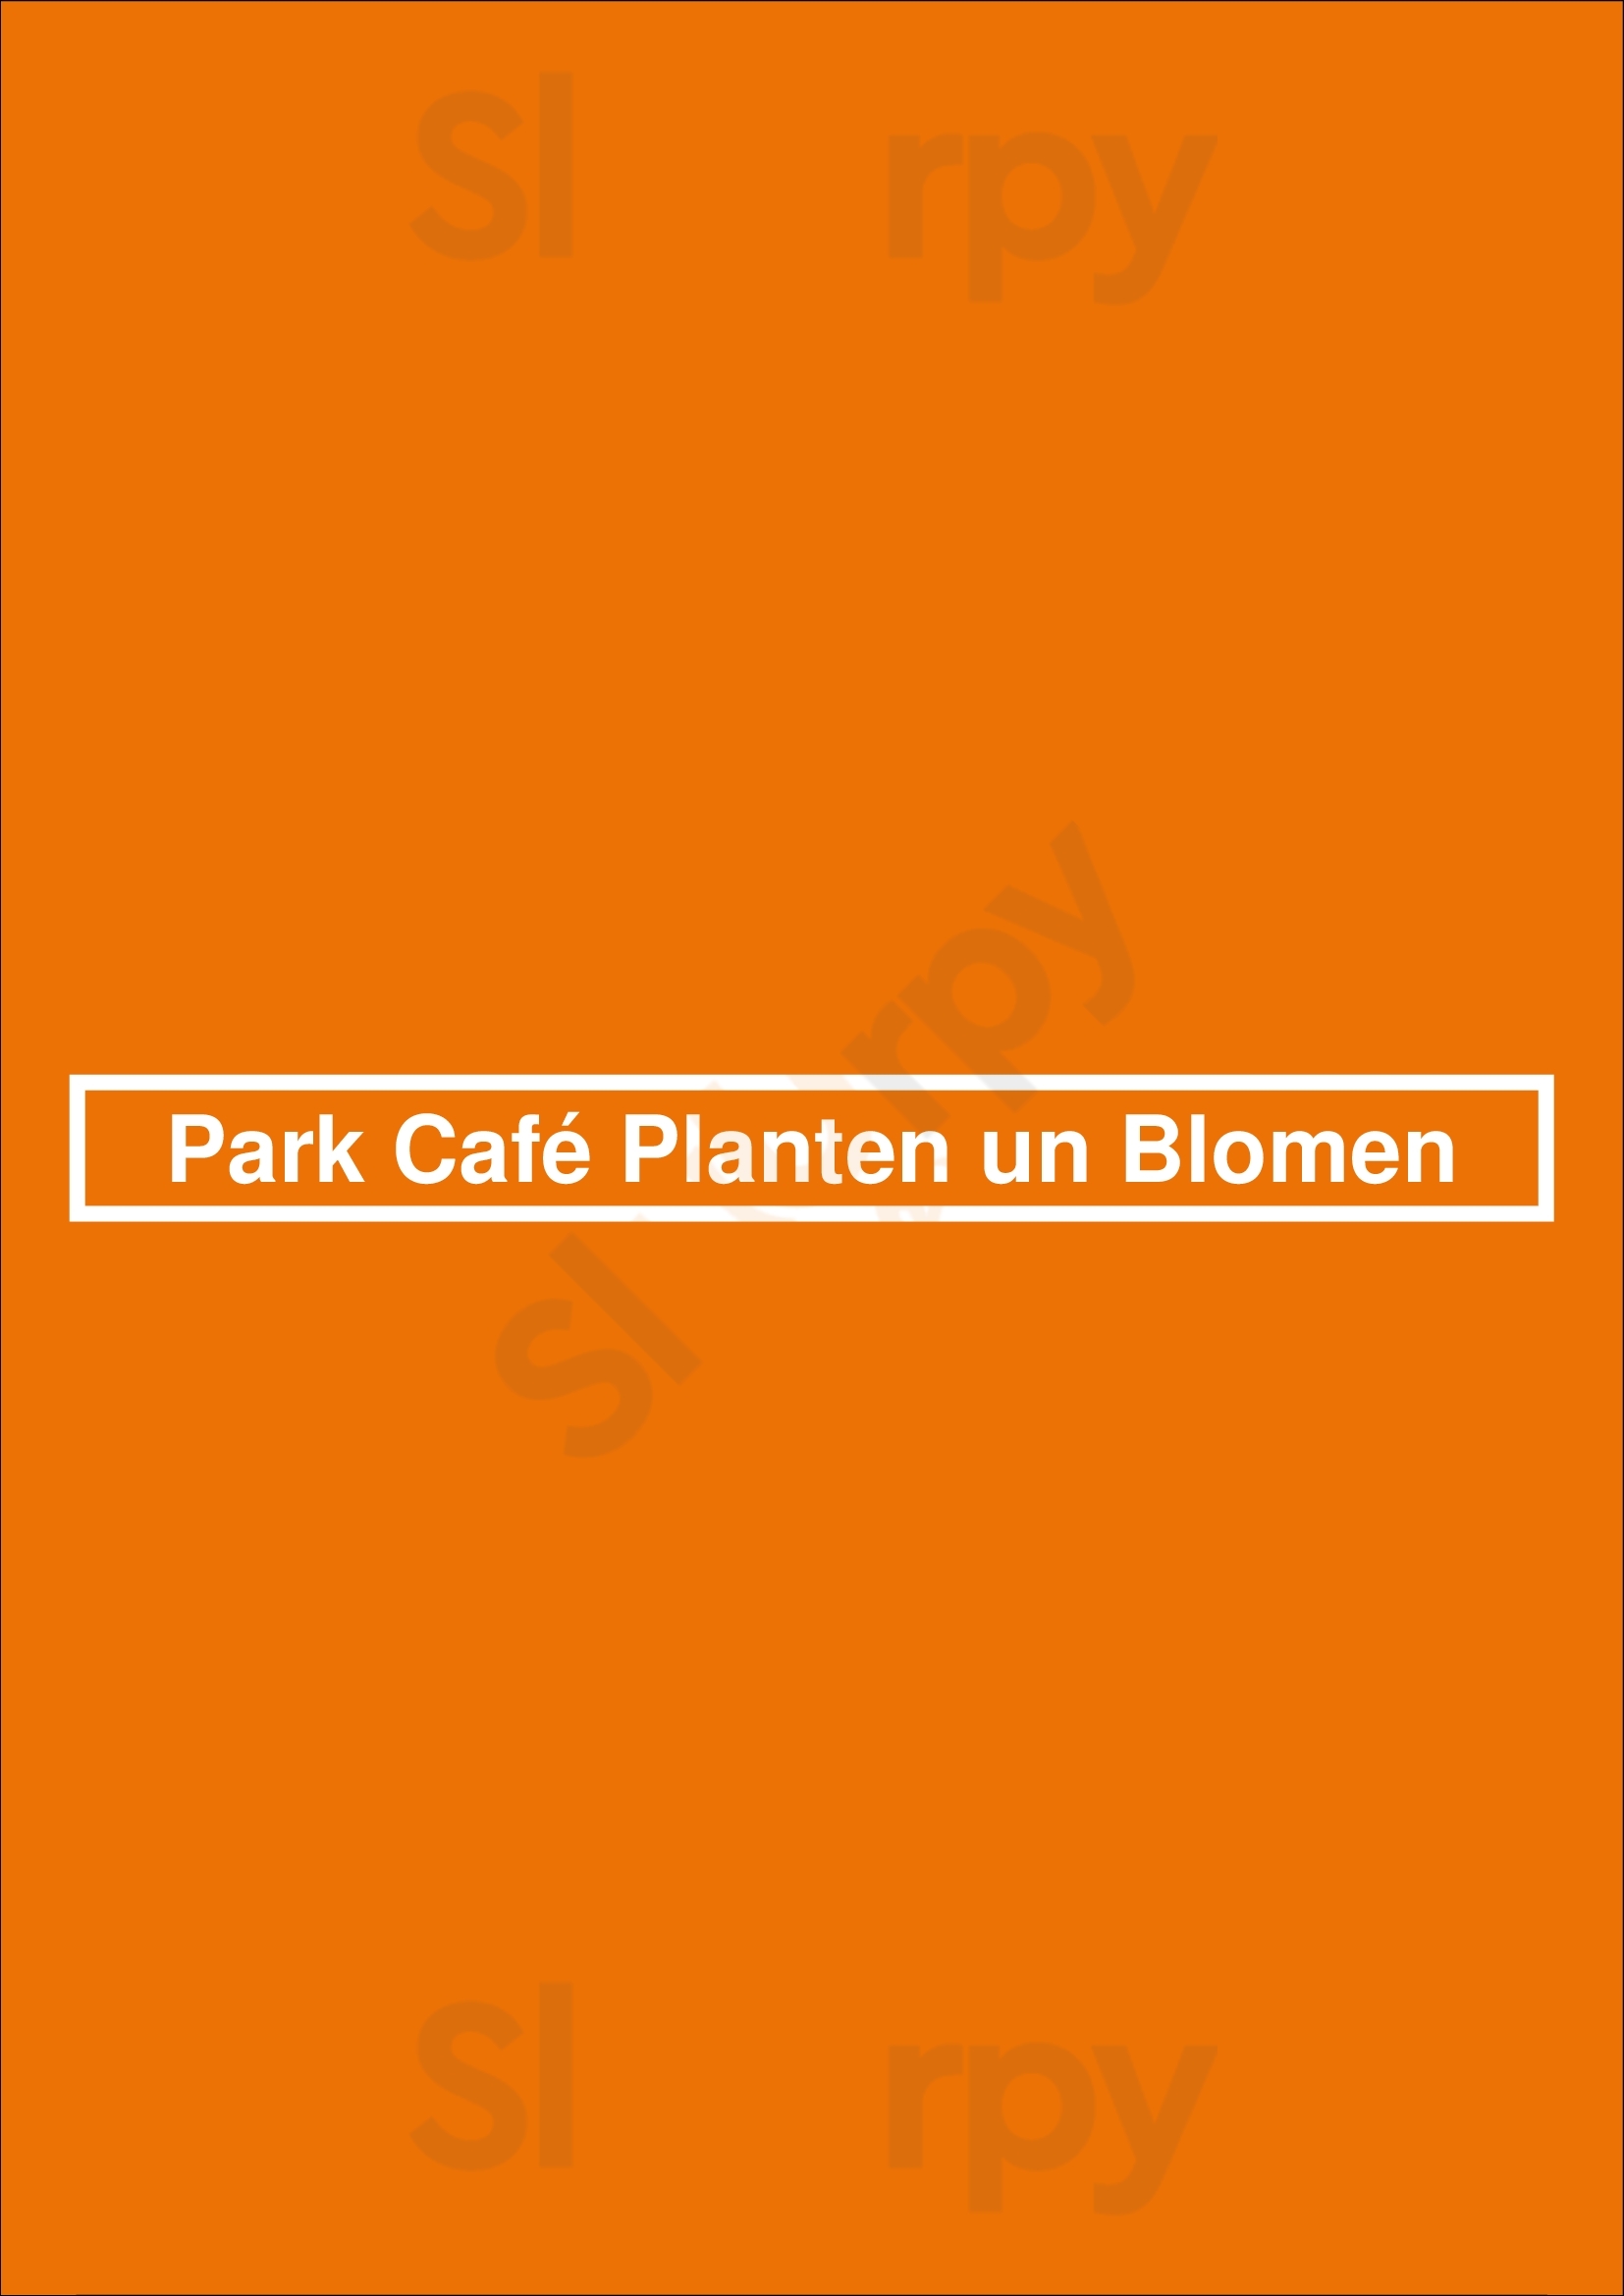 Park Café Planten Un Blomen Hamburg Menu - 1